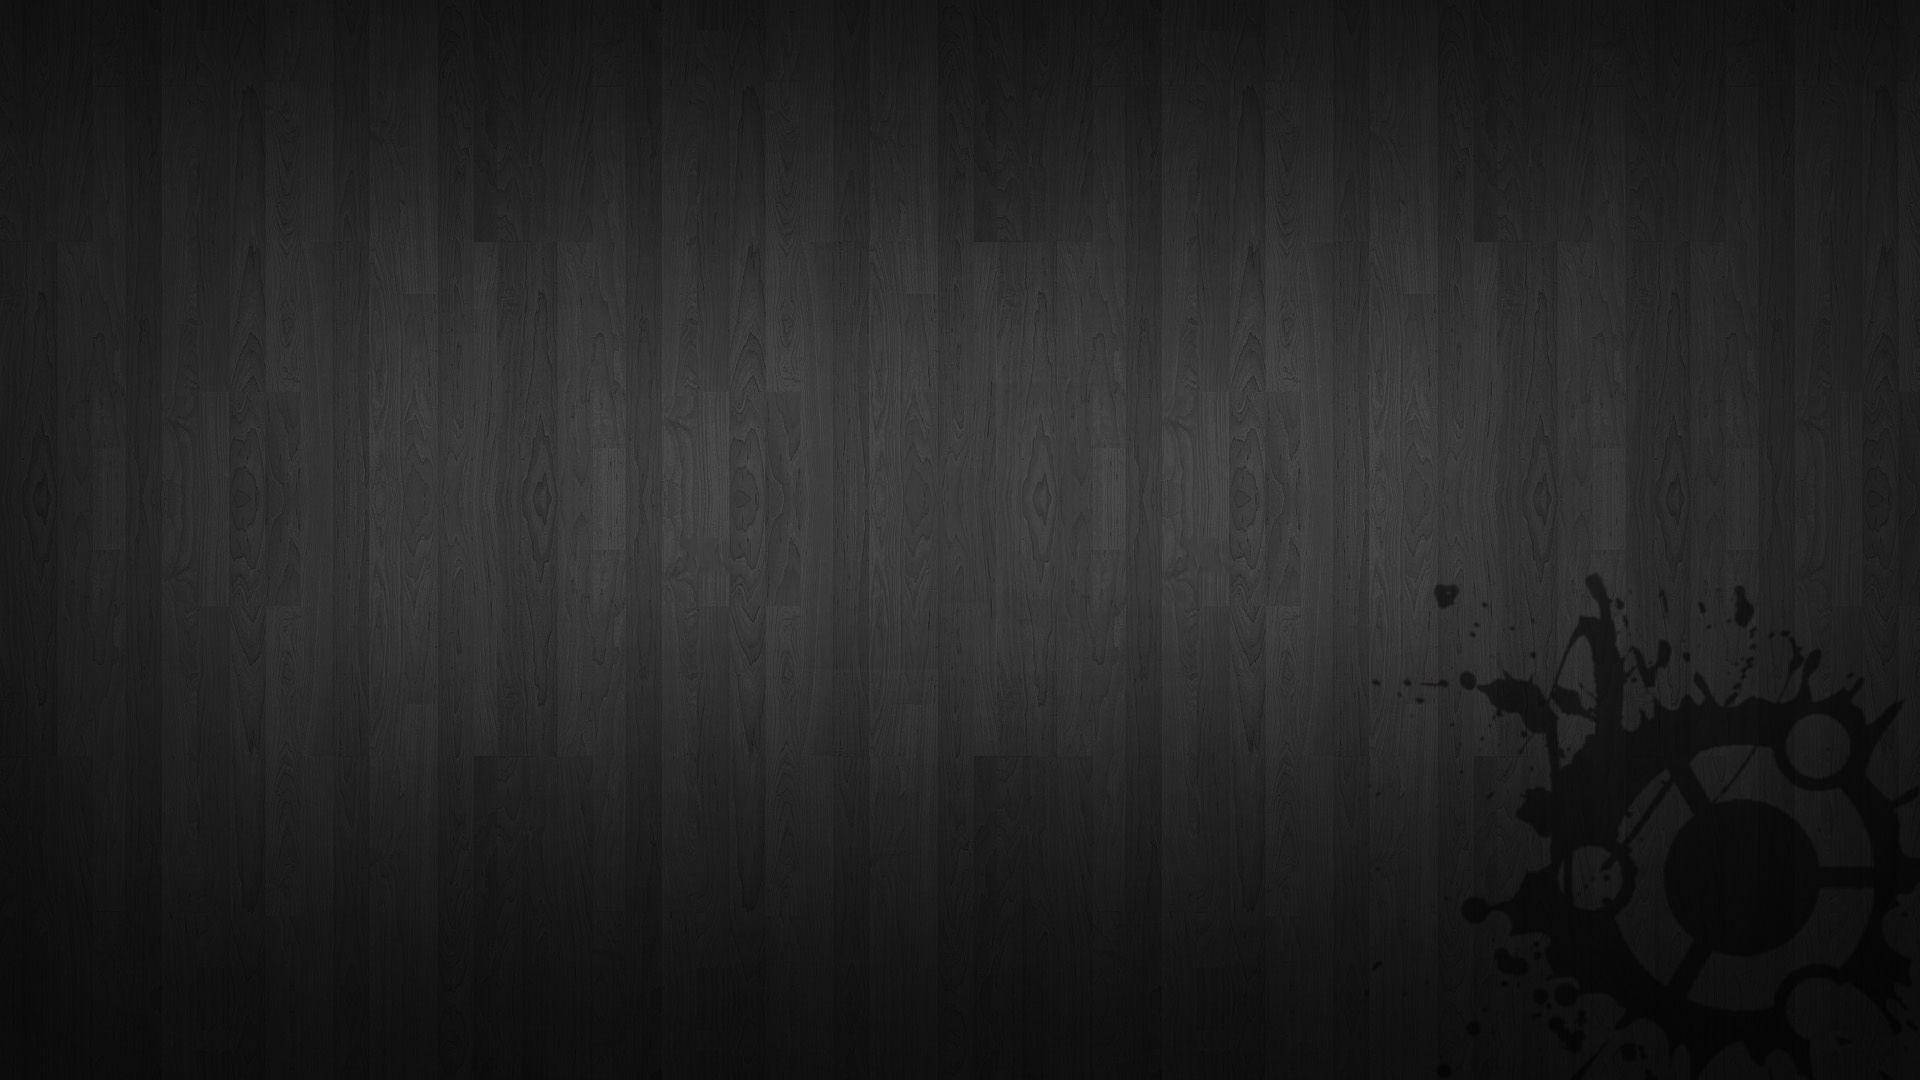 Dynamic Ubuntu Background - Dark Edition Wallpaper